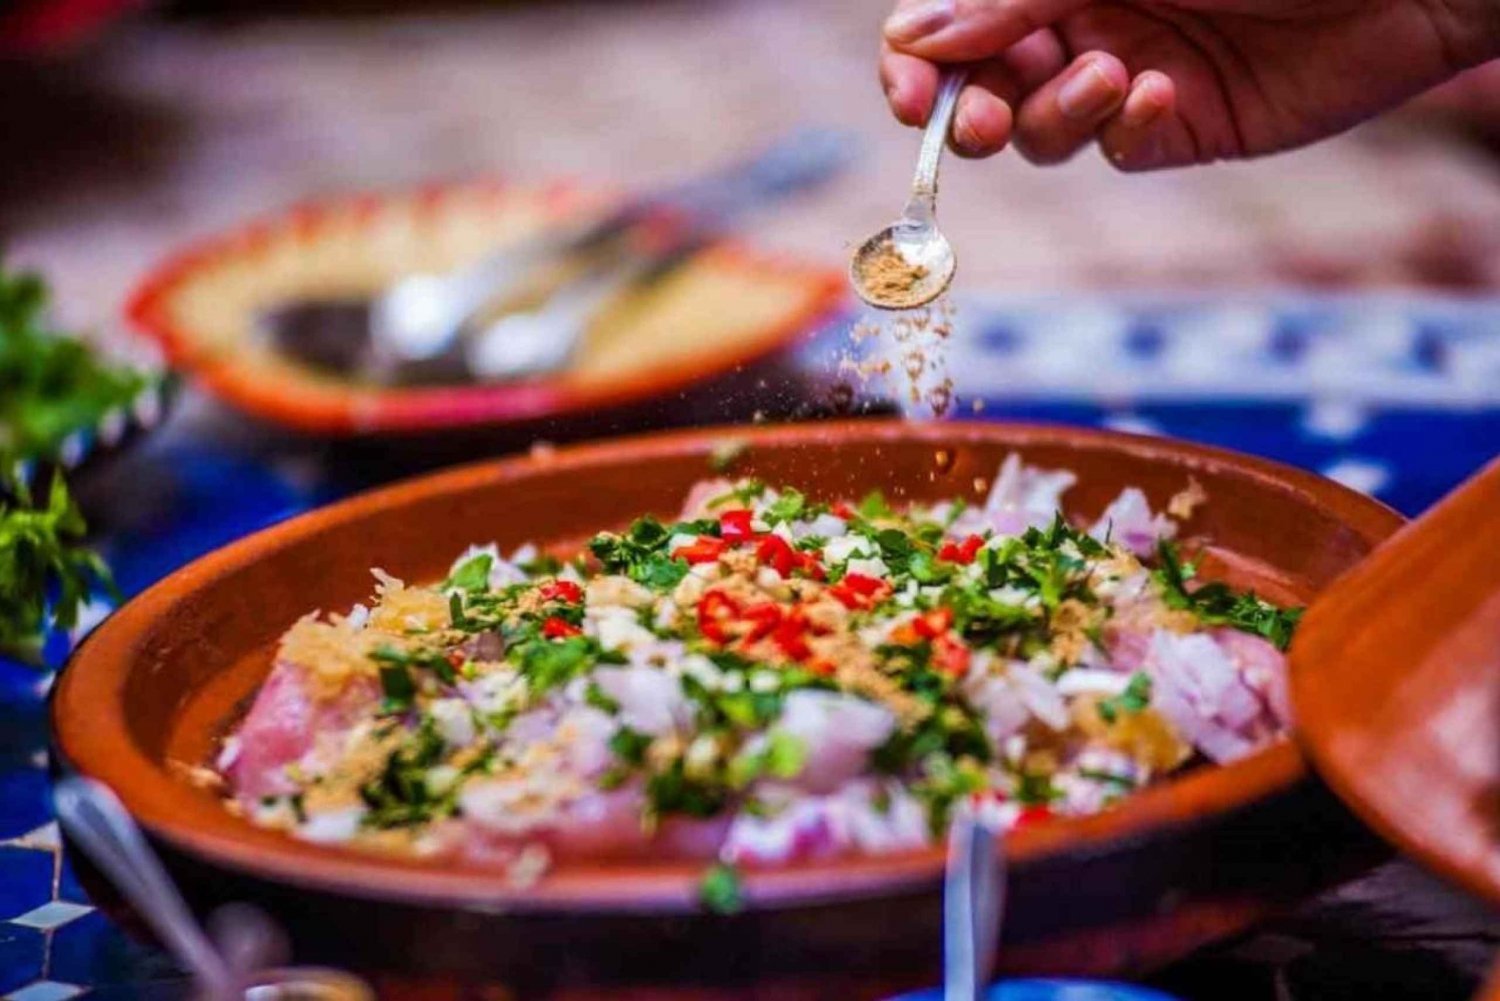 Fra Marrakech : Cooking Classe med en lokal kokk